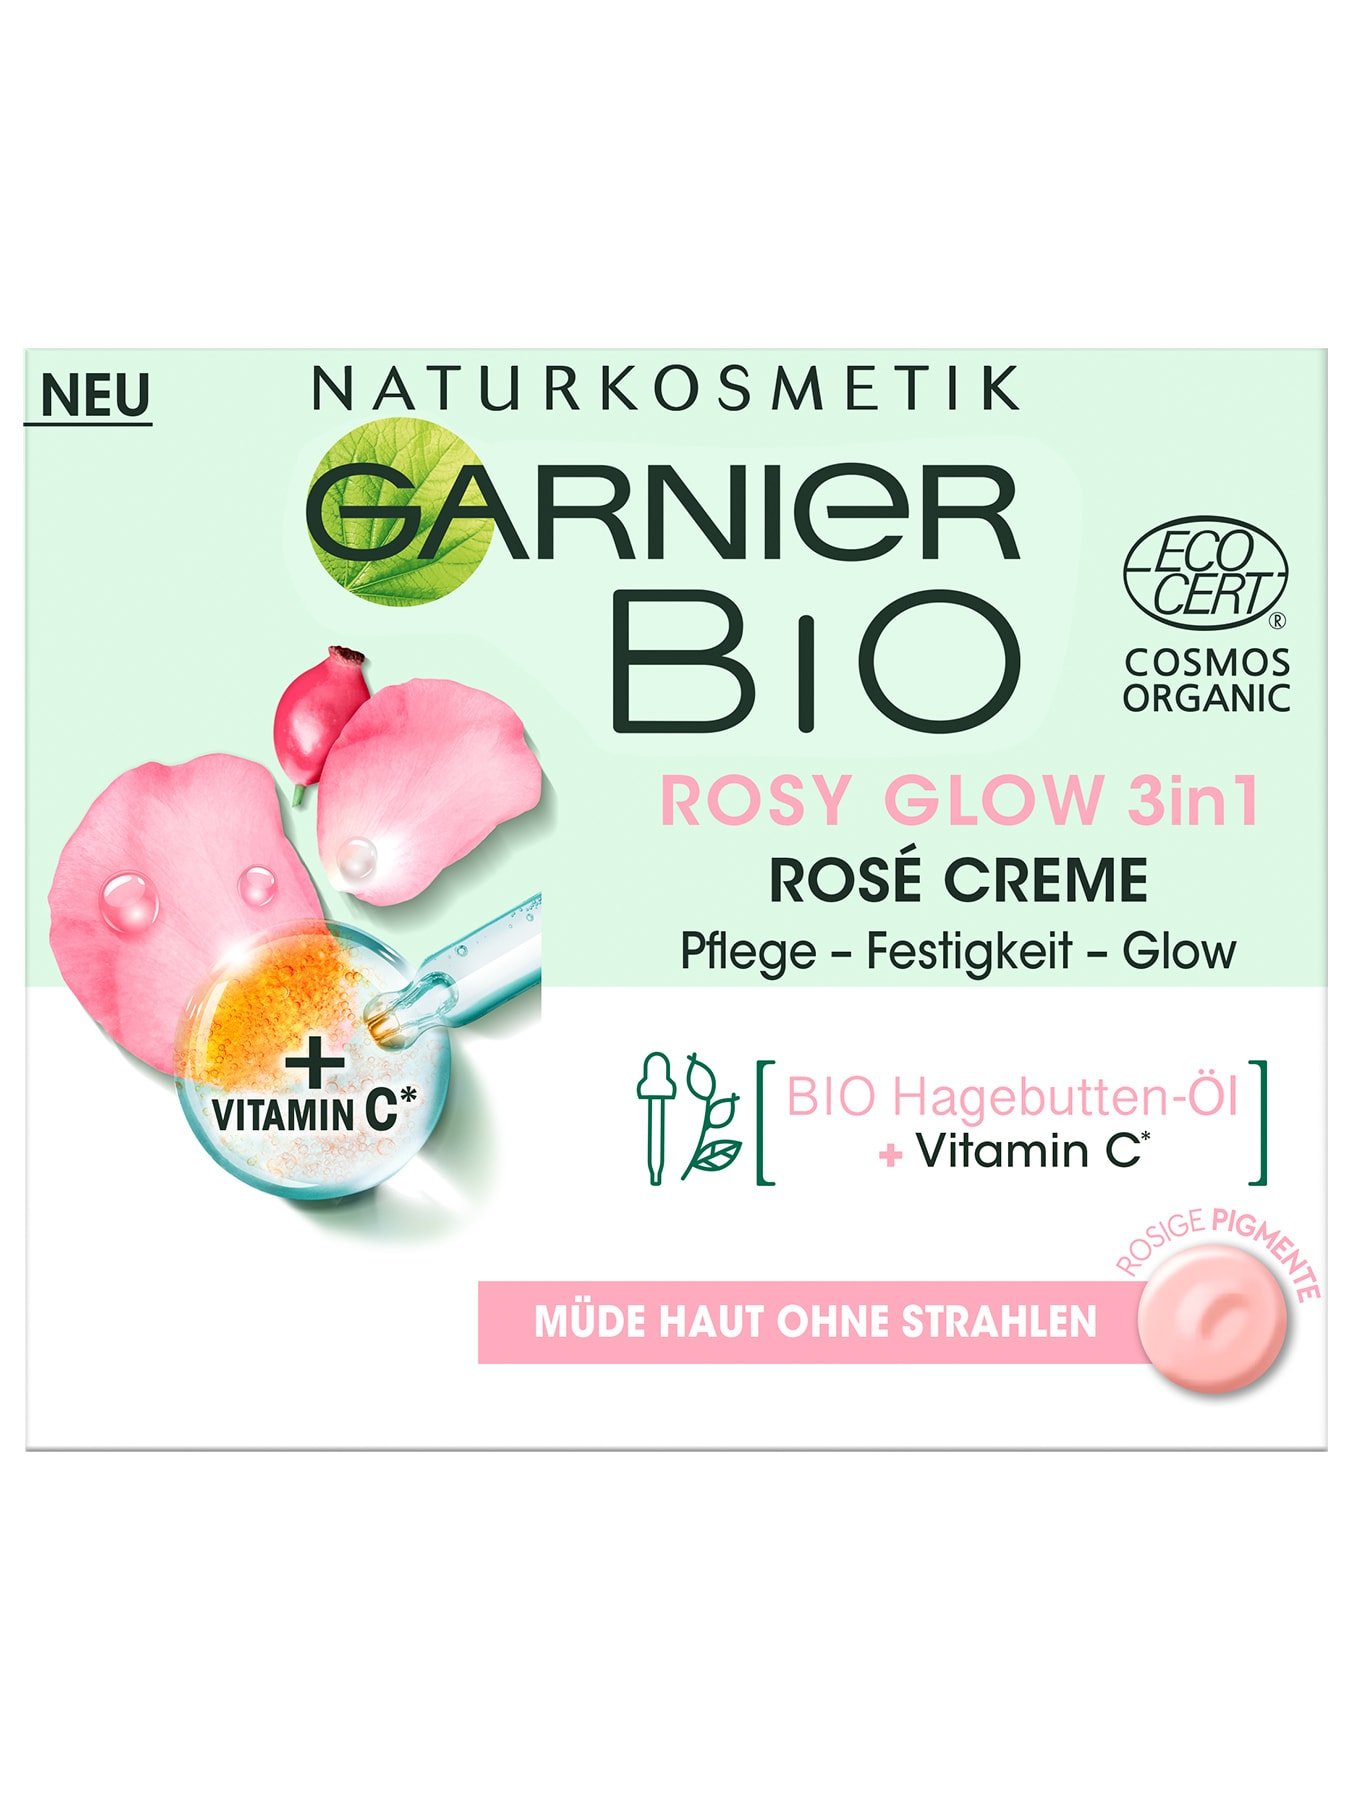 Garnier Bio Rosy Glow 3in1 Rose Creme - Vorderansicht Verpackung